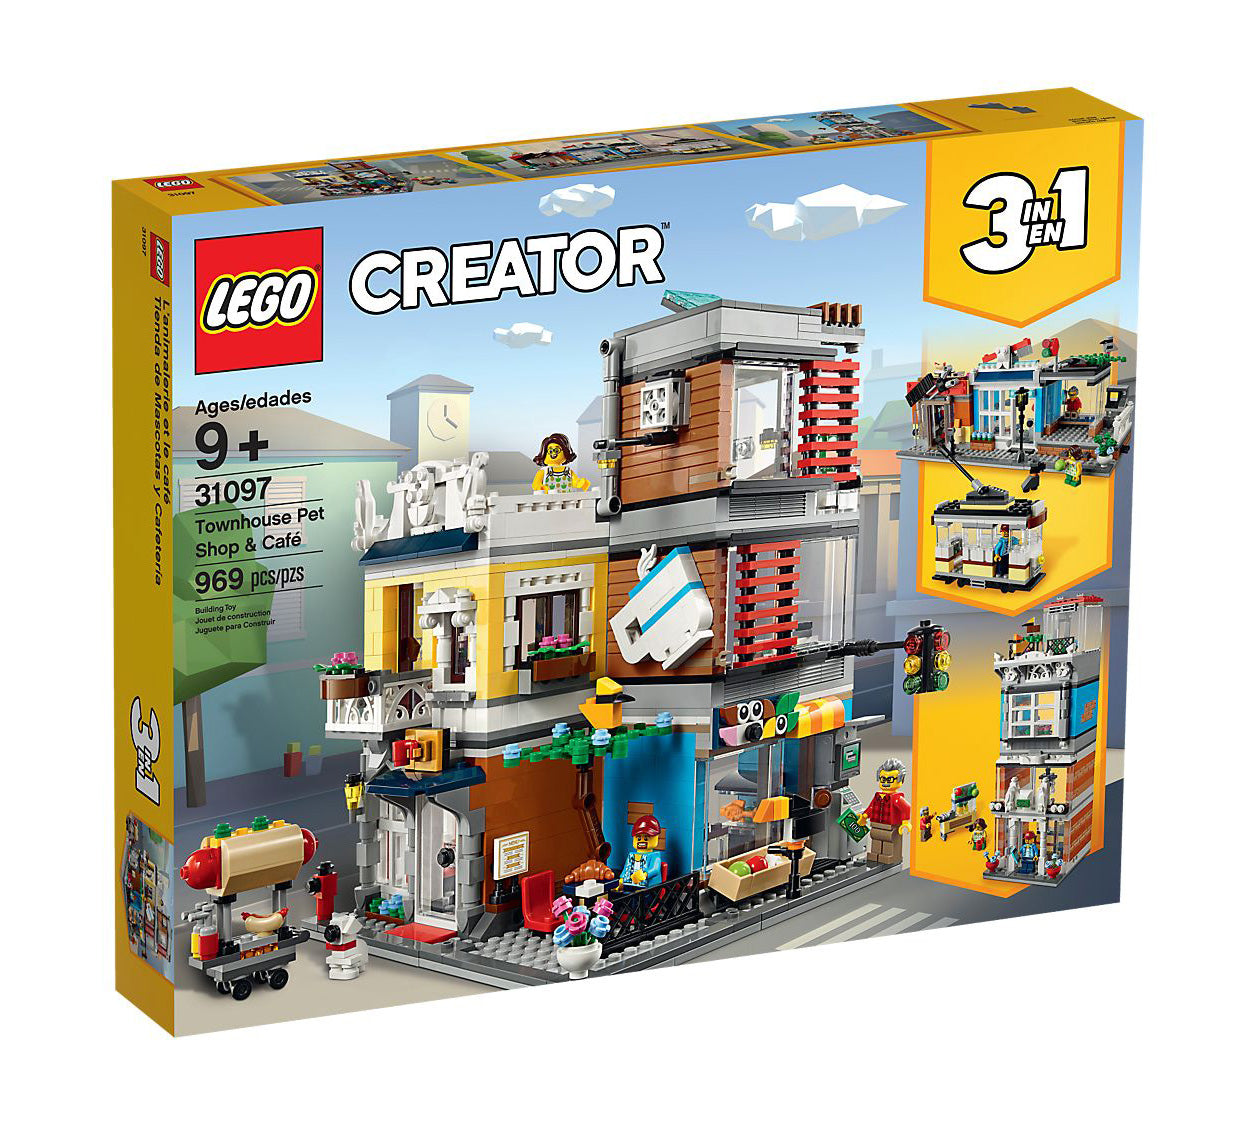 Lego Creator Townhouse Pet Shop & Café 31097